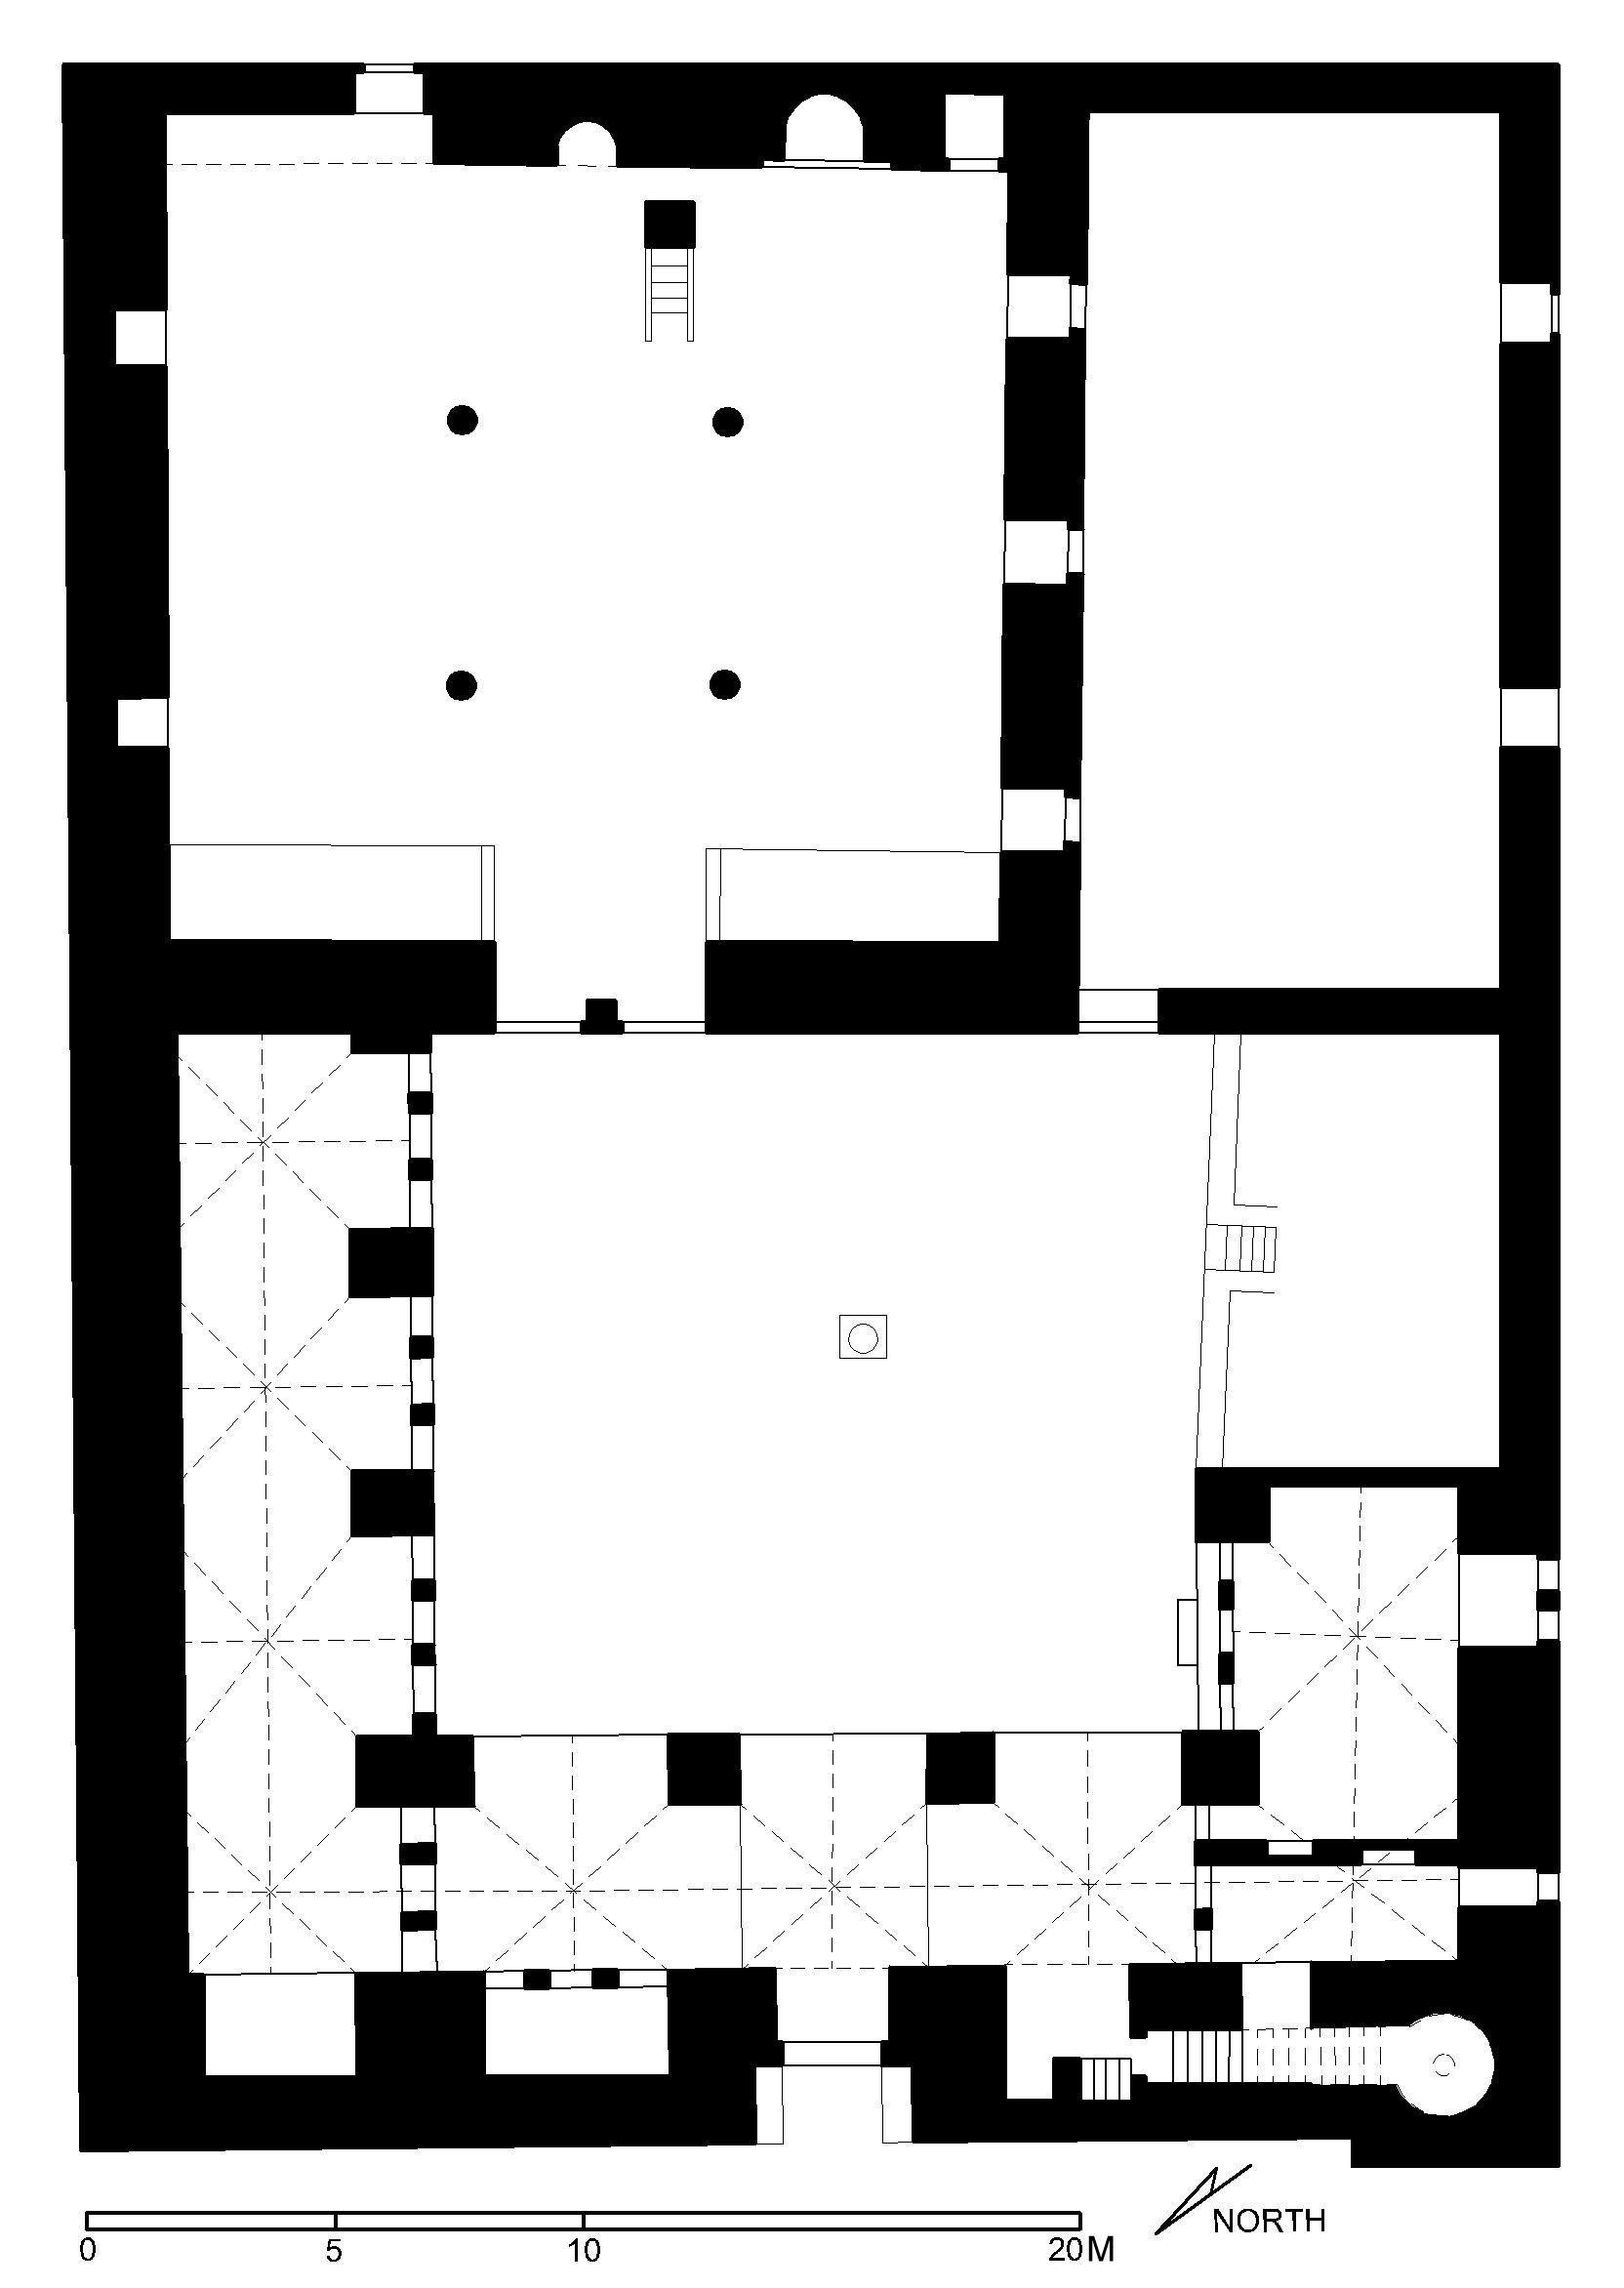 Floor plan of Ahmar Mosque, Zefat